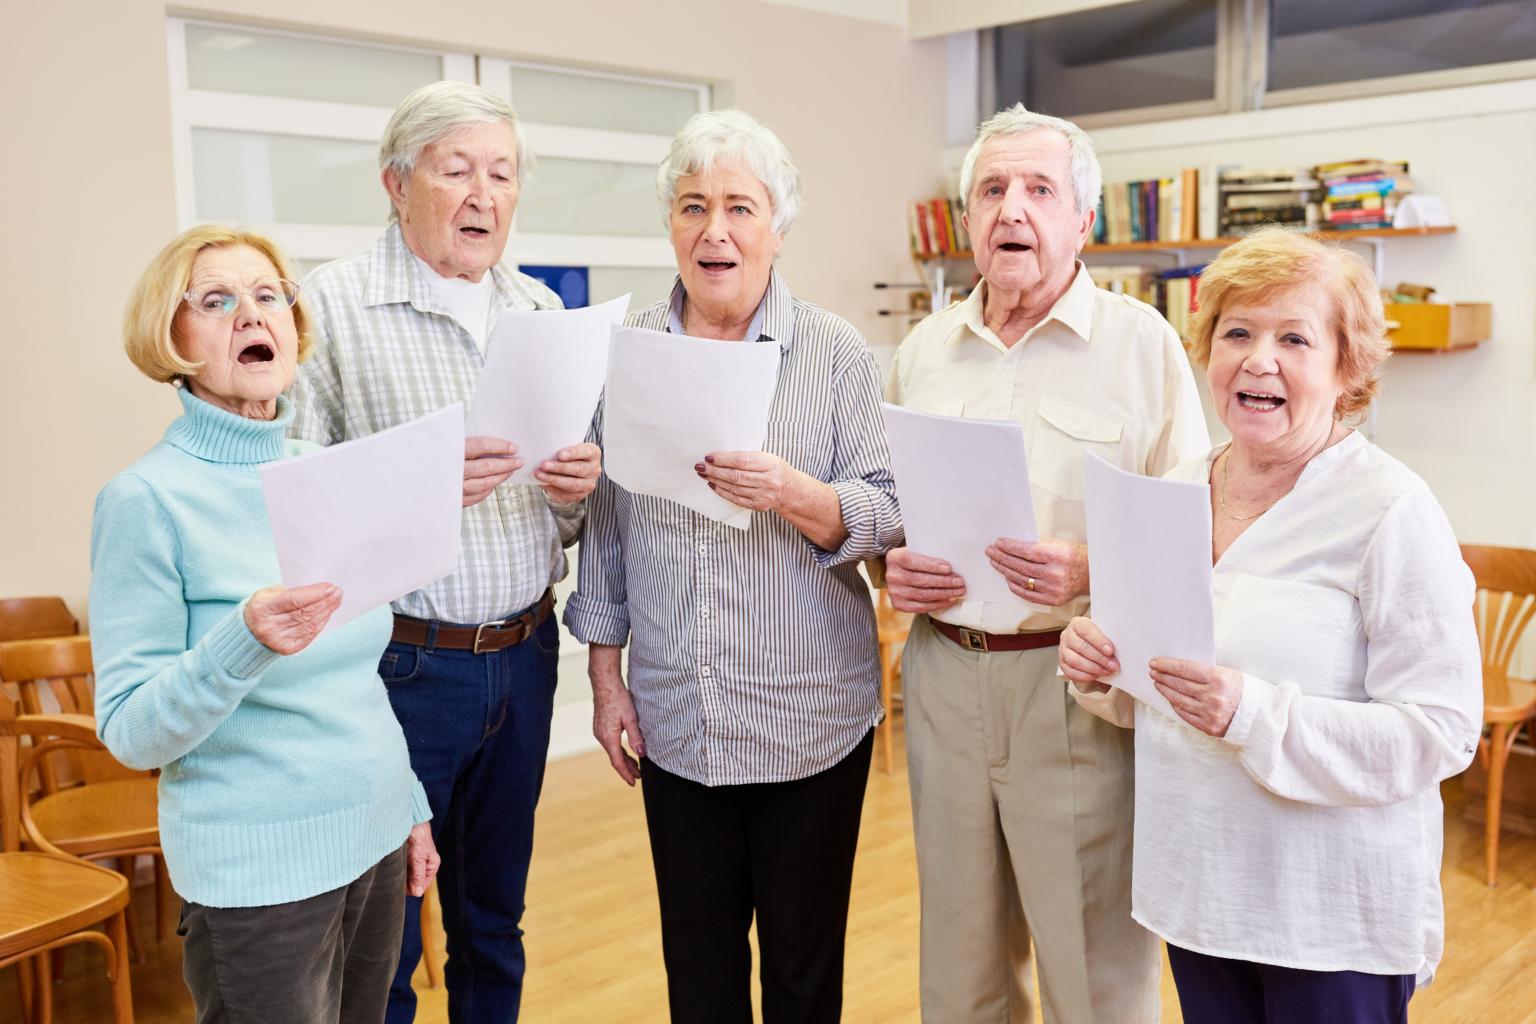 Senioren singen gemeinsam im Chor (c) Robert Kneschke | stock.adobe.com